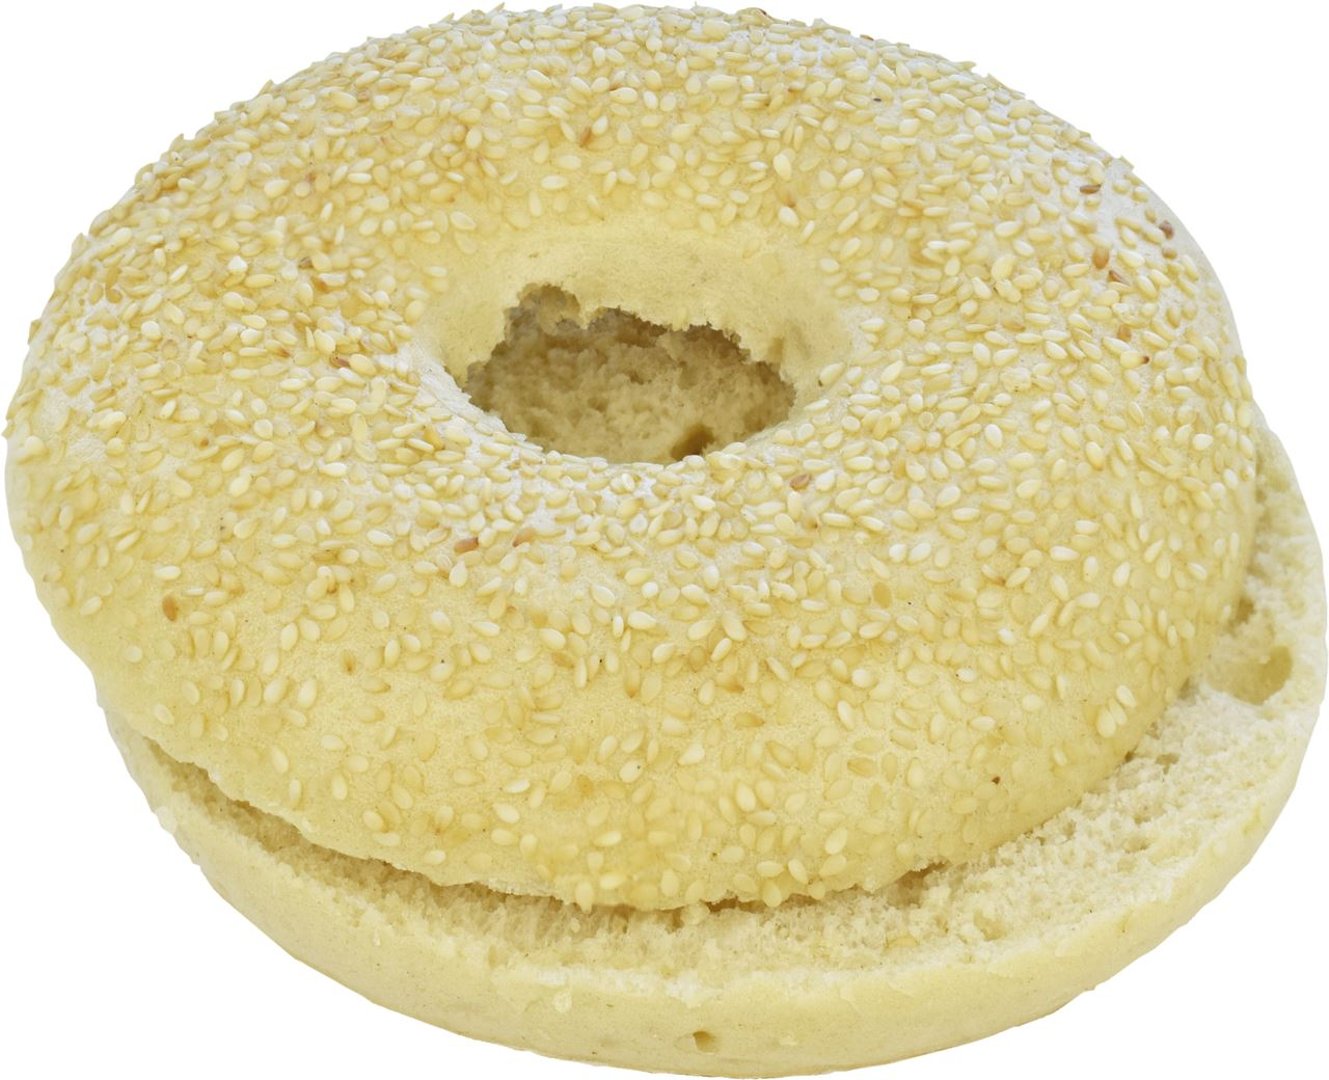 Edna - Bayerischer Giga-Bagel mit Sesam, geschnitten, tiefgefroren, 30 Stück à ca. 100 g - 3 kg Karton